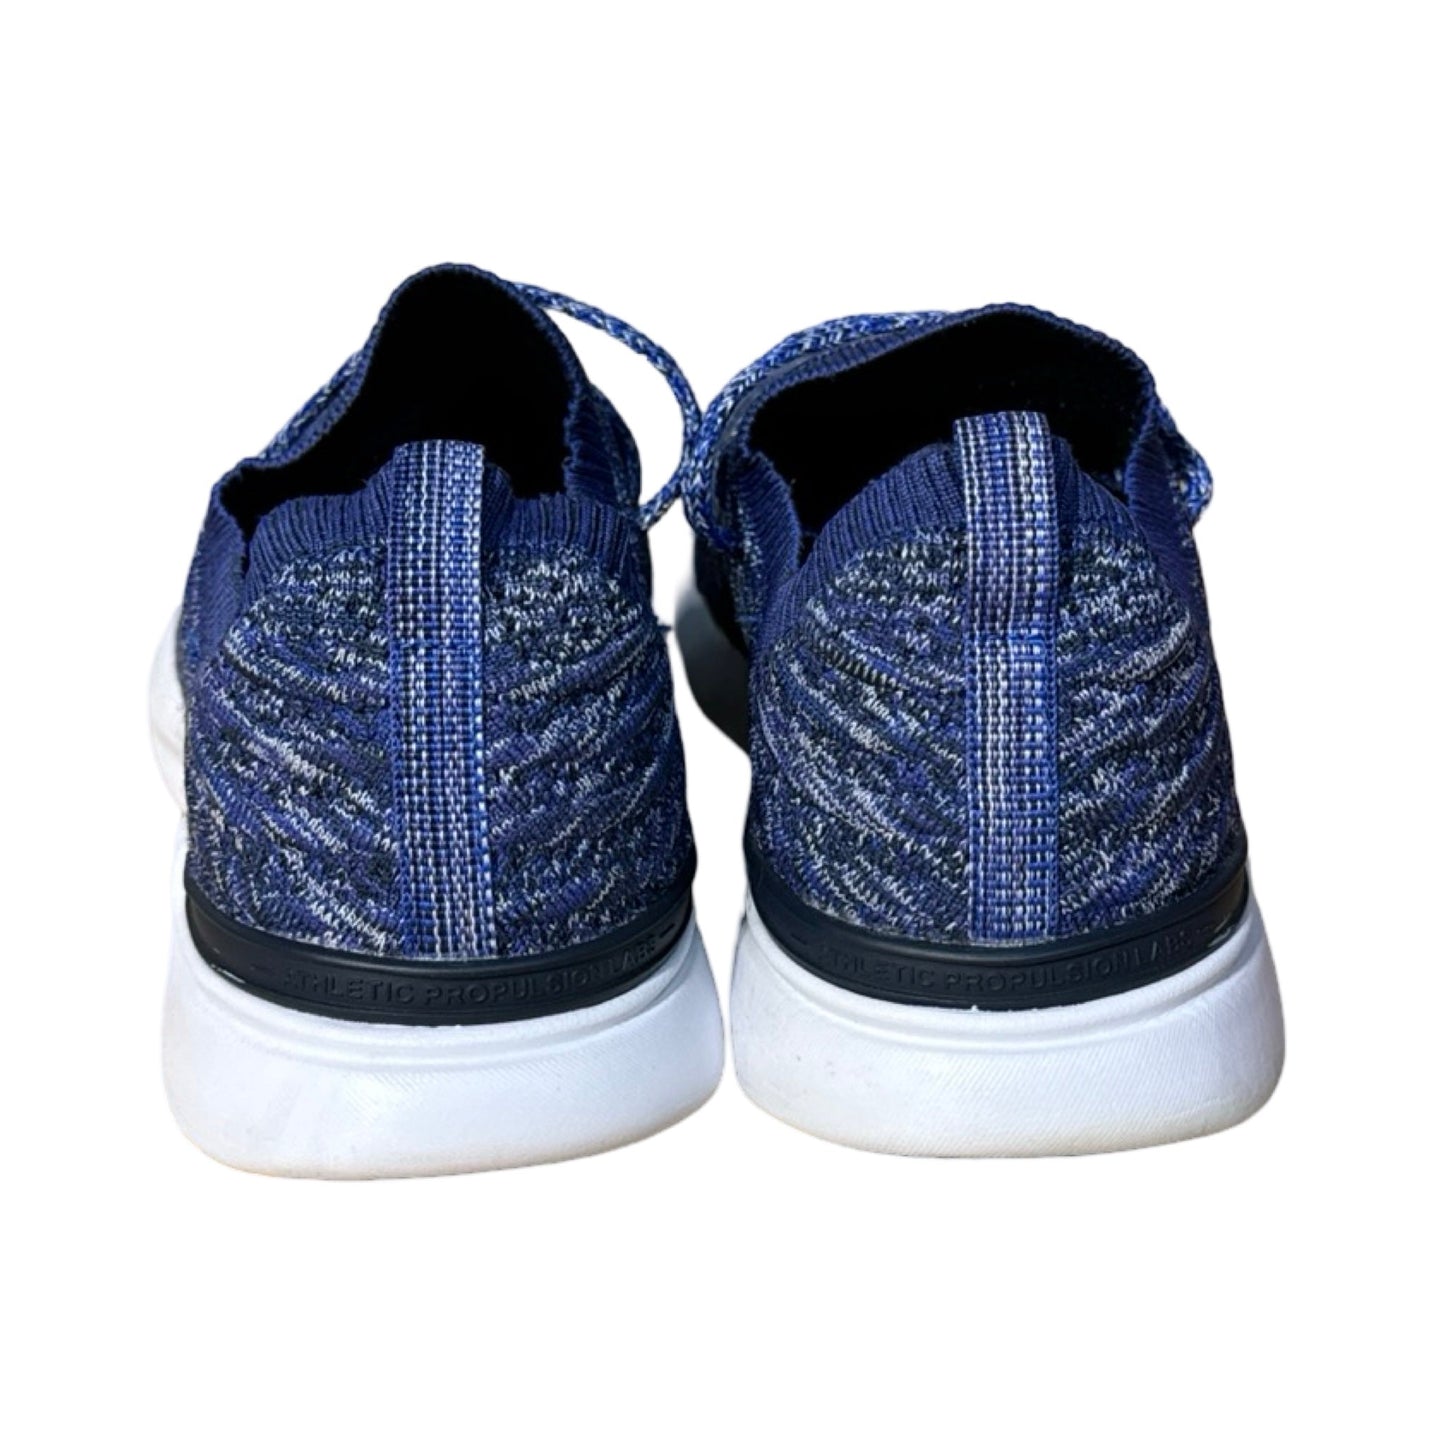 Blue Shoes Athletic Apl, Size 9